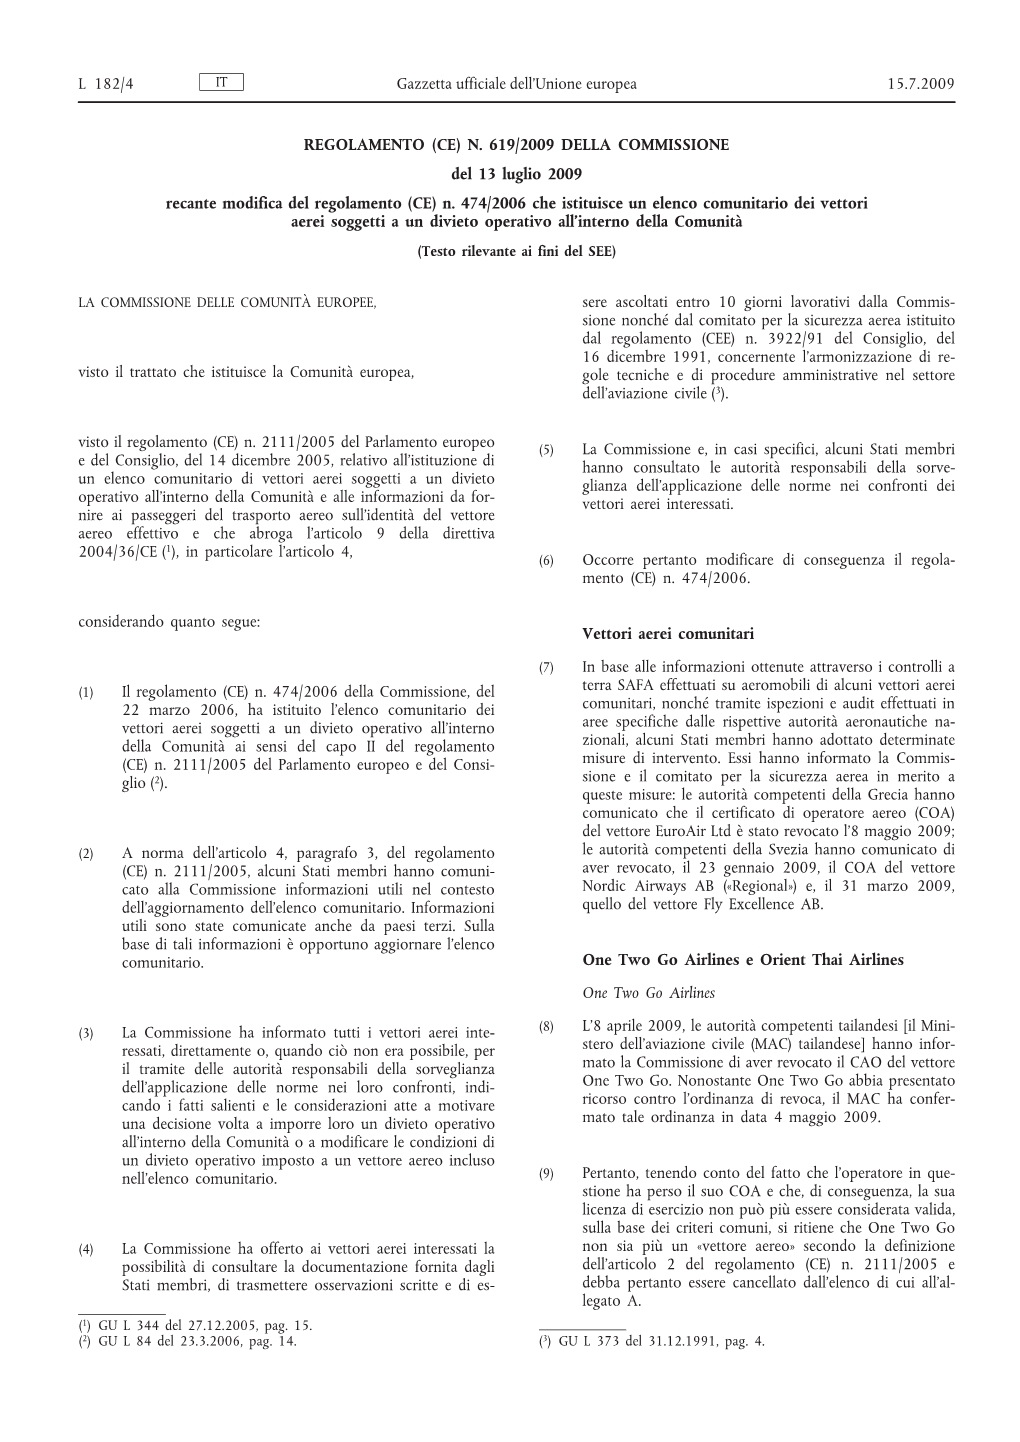 Regolamento (CE) 619/2009